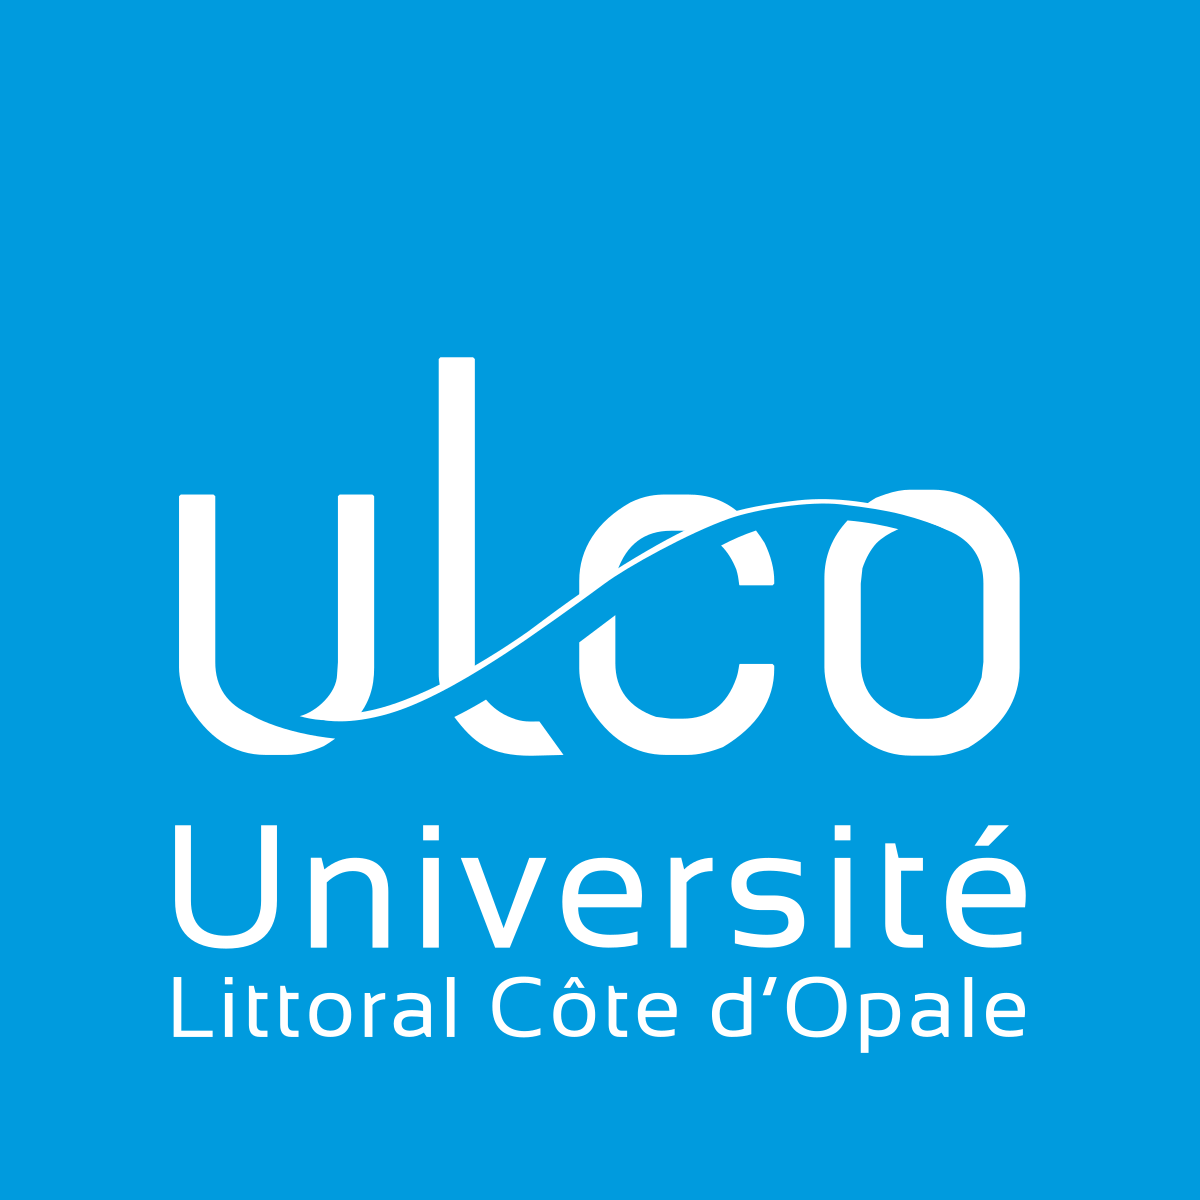 Logo ULCO